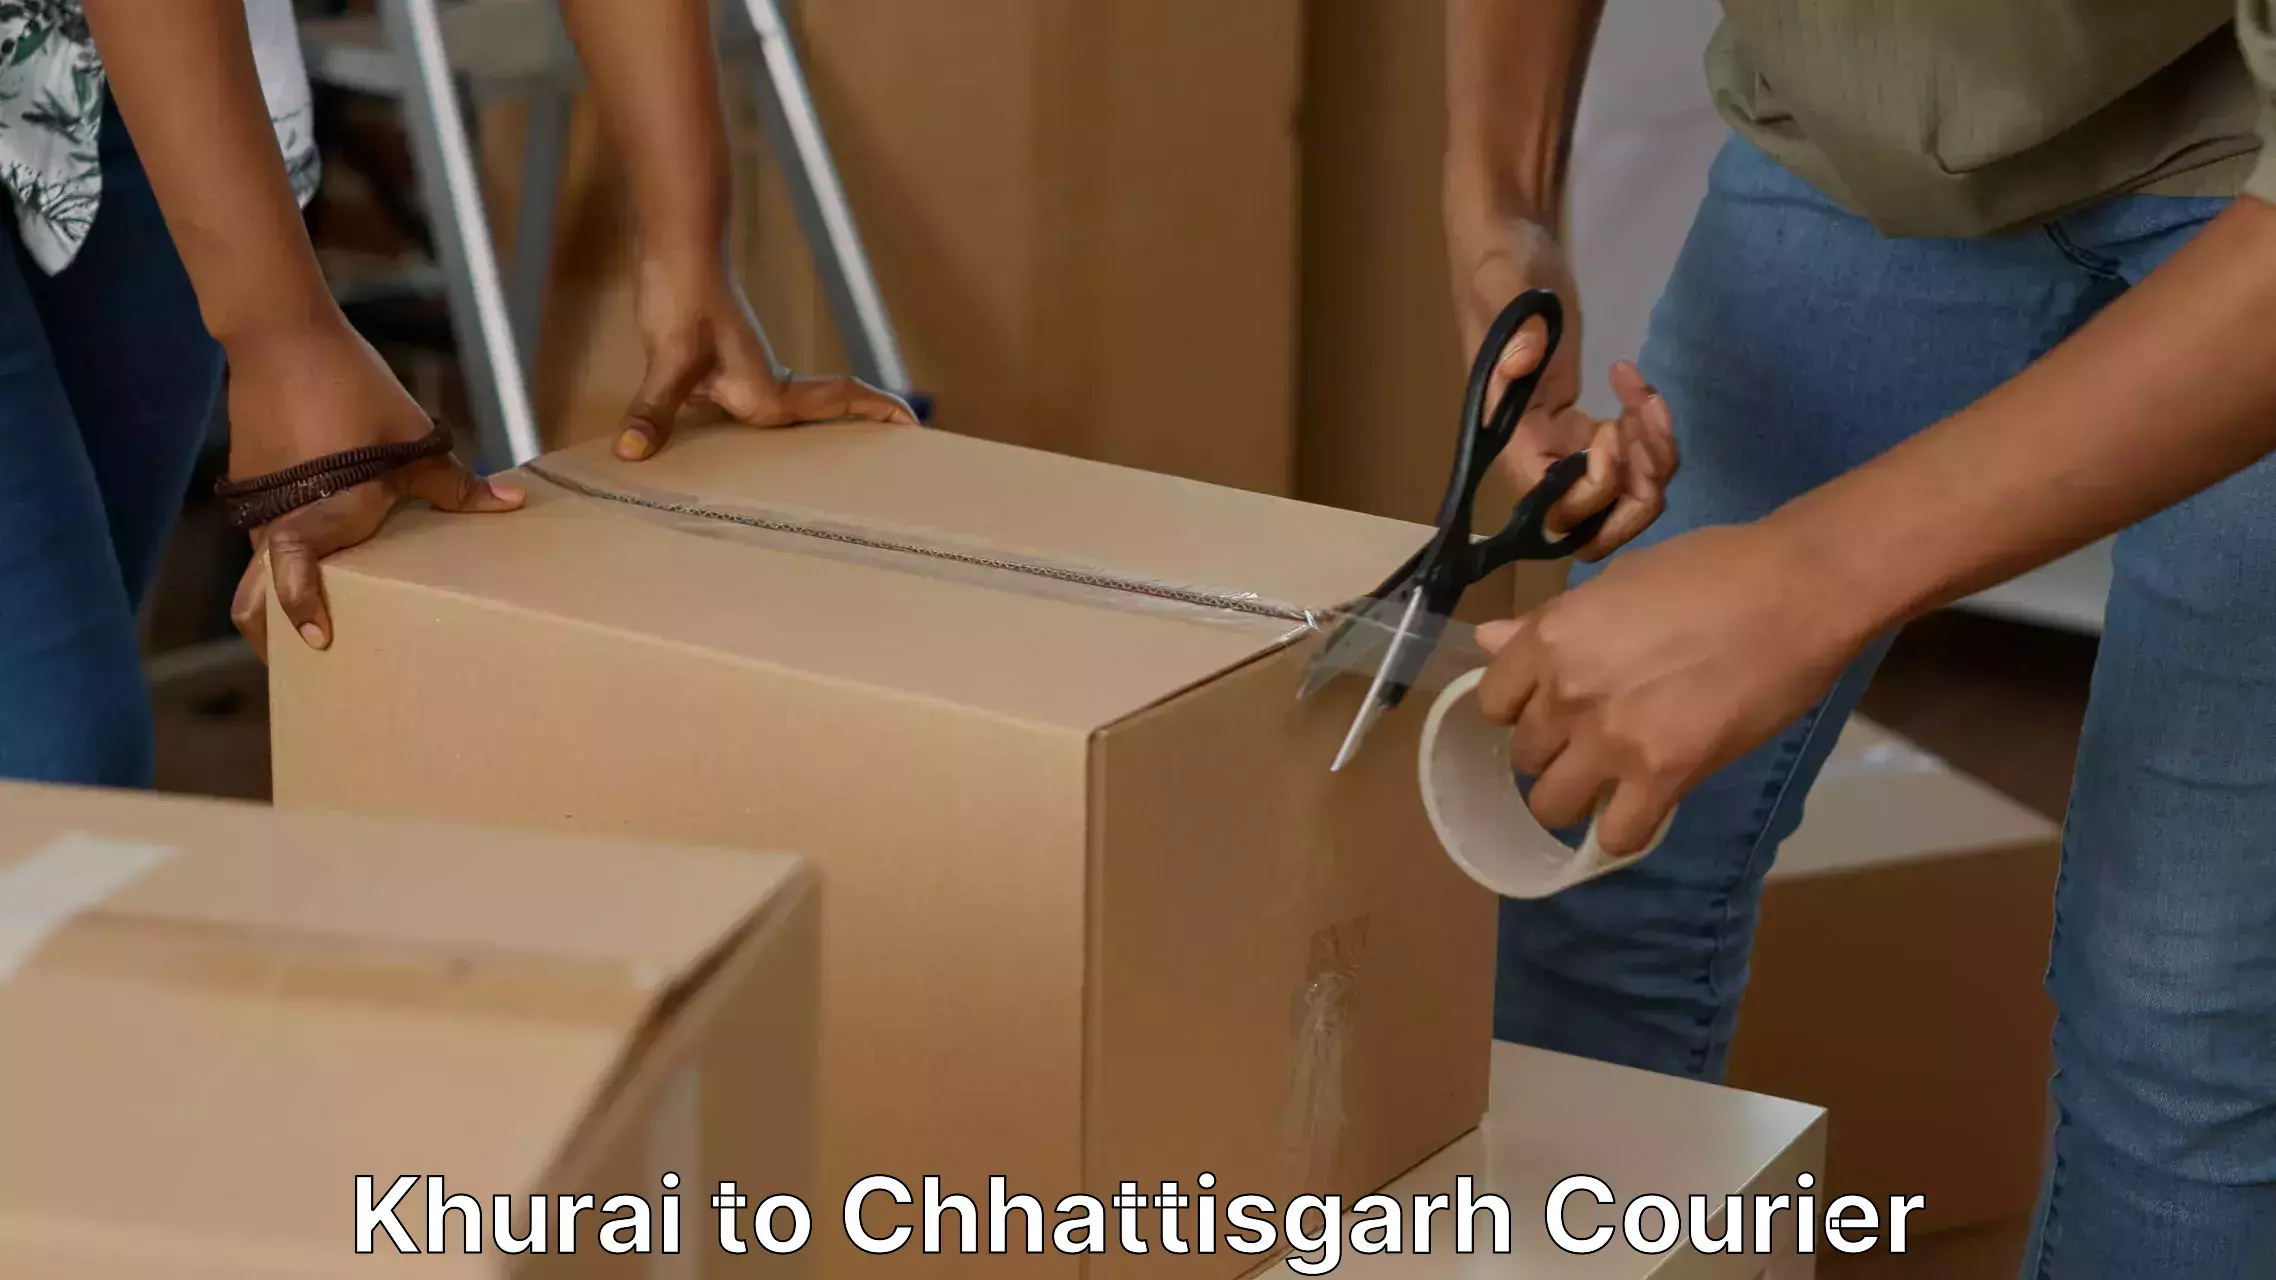 Professional movers and packers Khurai to Raigarh Chhattisgarh